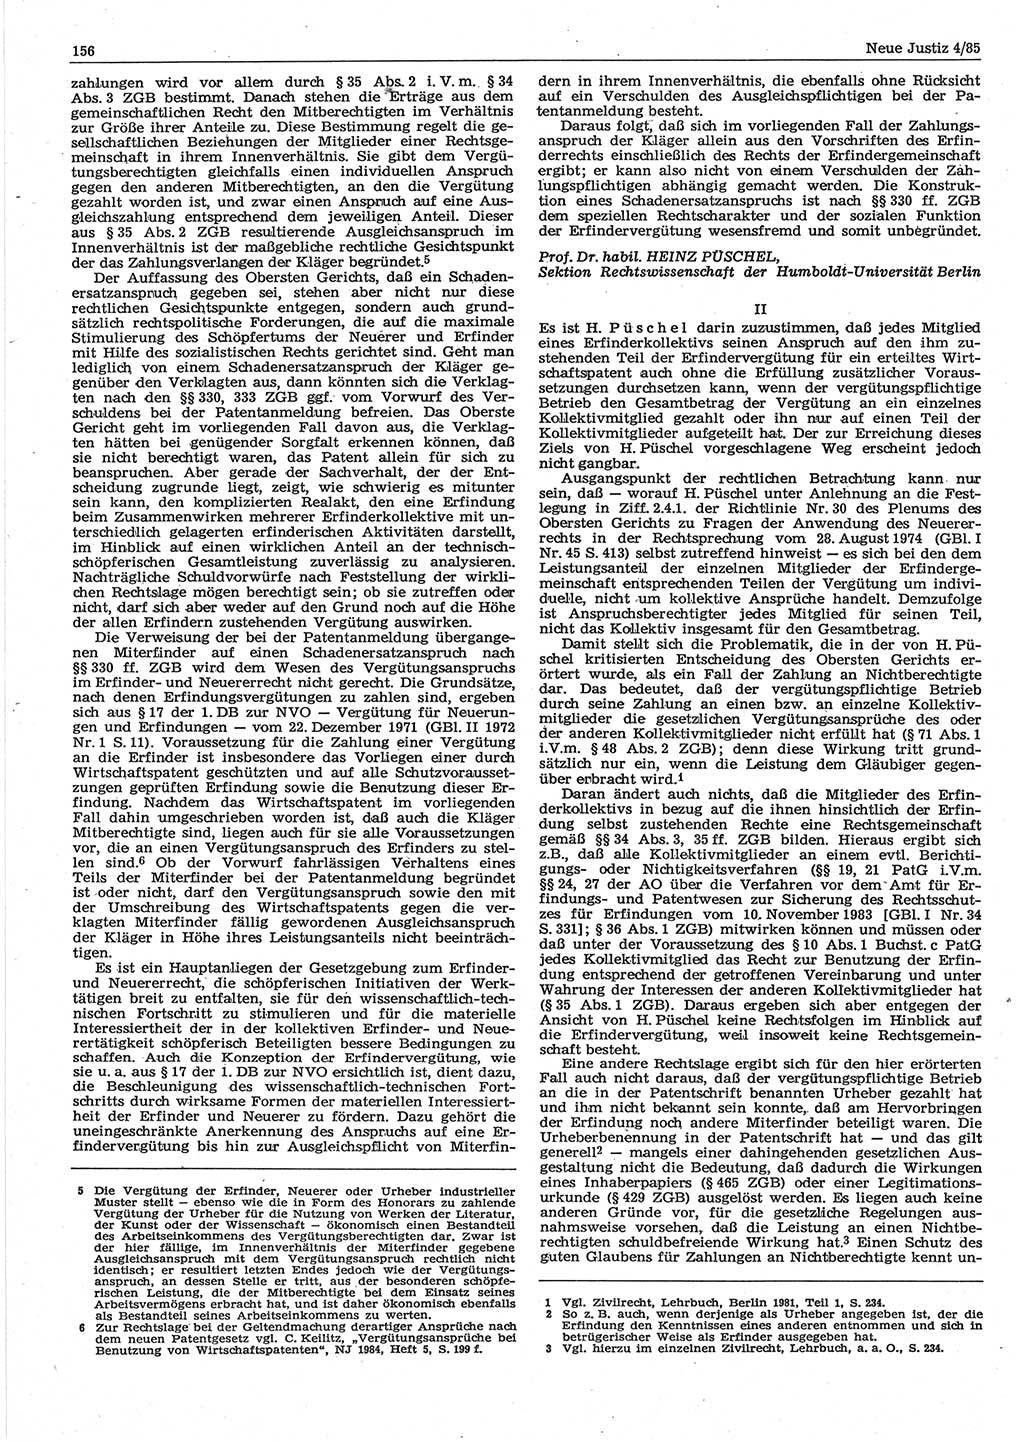 Neue Justiz (NJ), Zeitschrift für sozialistisches Recht und Gesetzlichkeit [Deutsche Demokratische Republik (DDR)], 39. Jahrgang 1985, Seite 156 (NJ DDR 1985, S. 156)